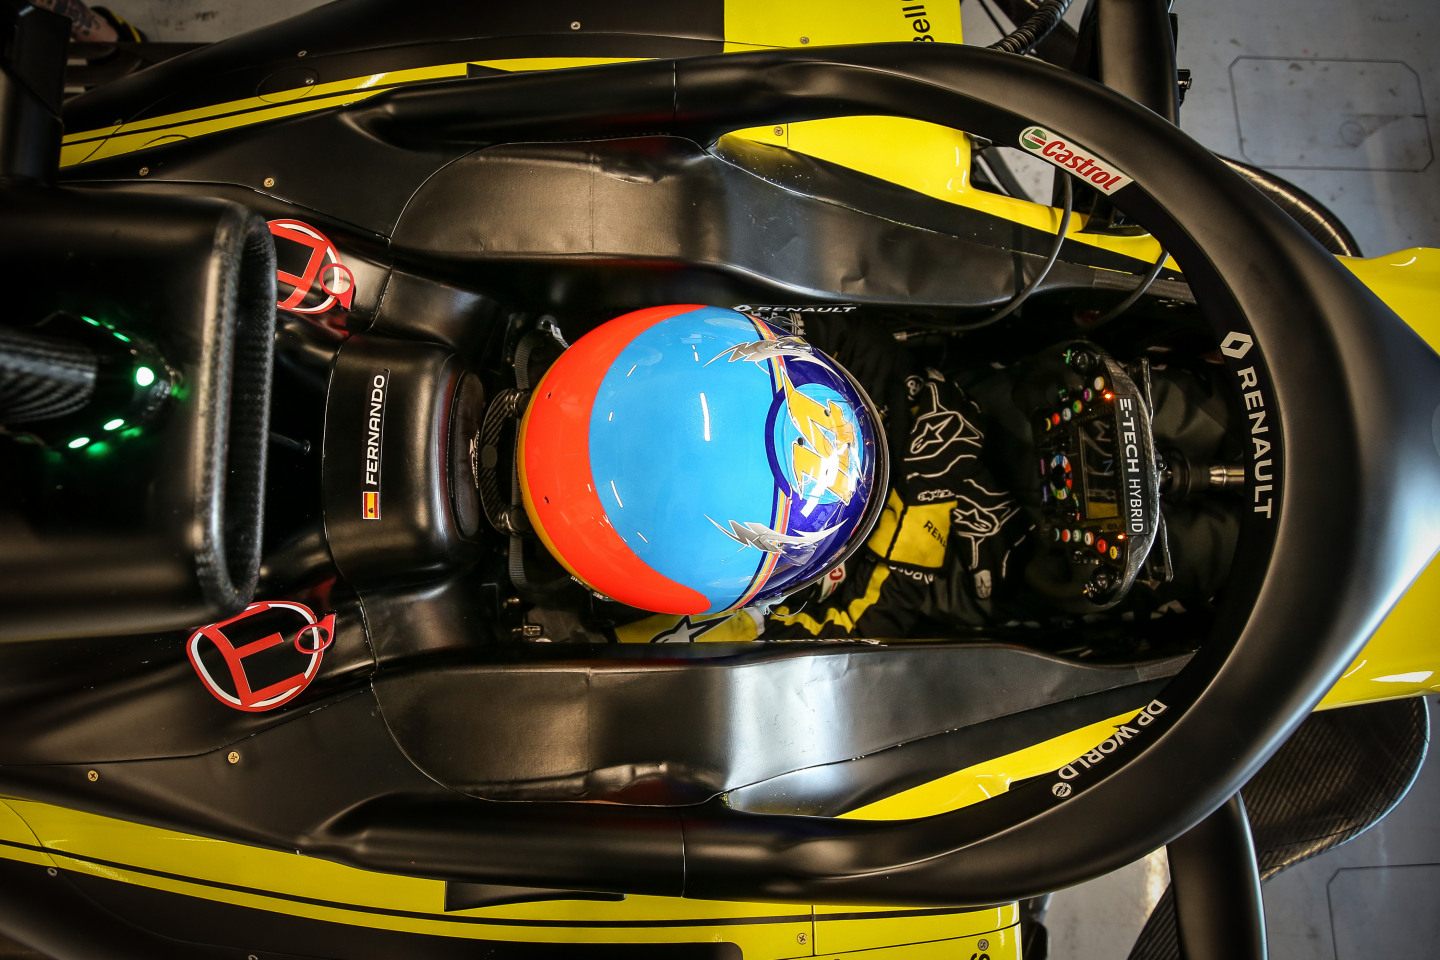 Фото: Возвращение Фернандо Алонсо за руль машины Формулы 1